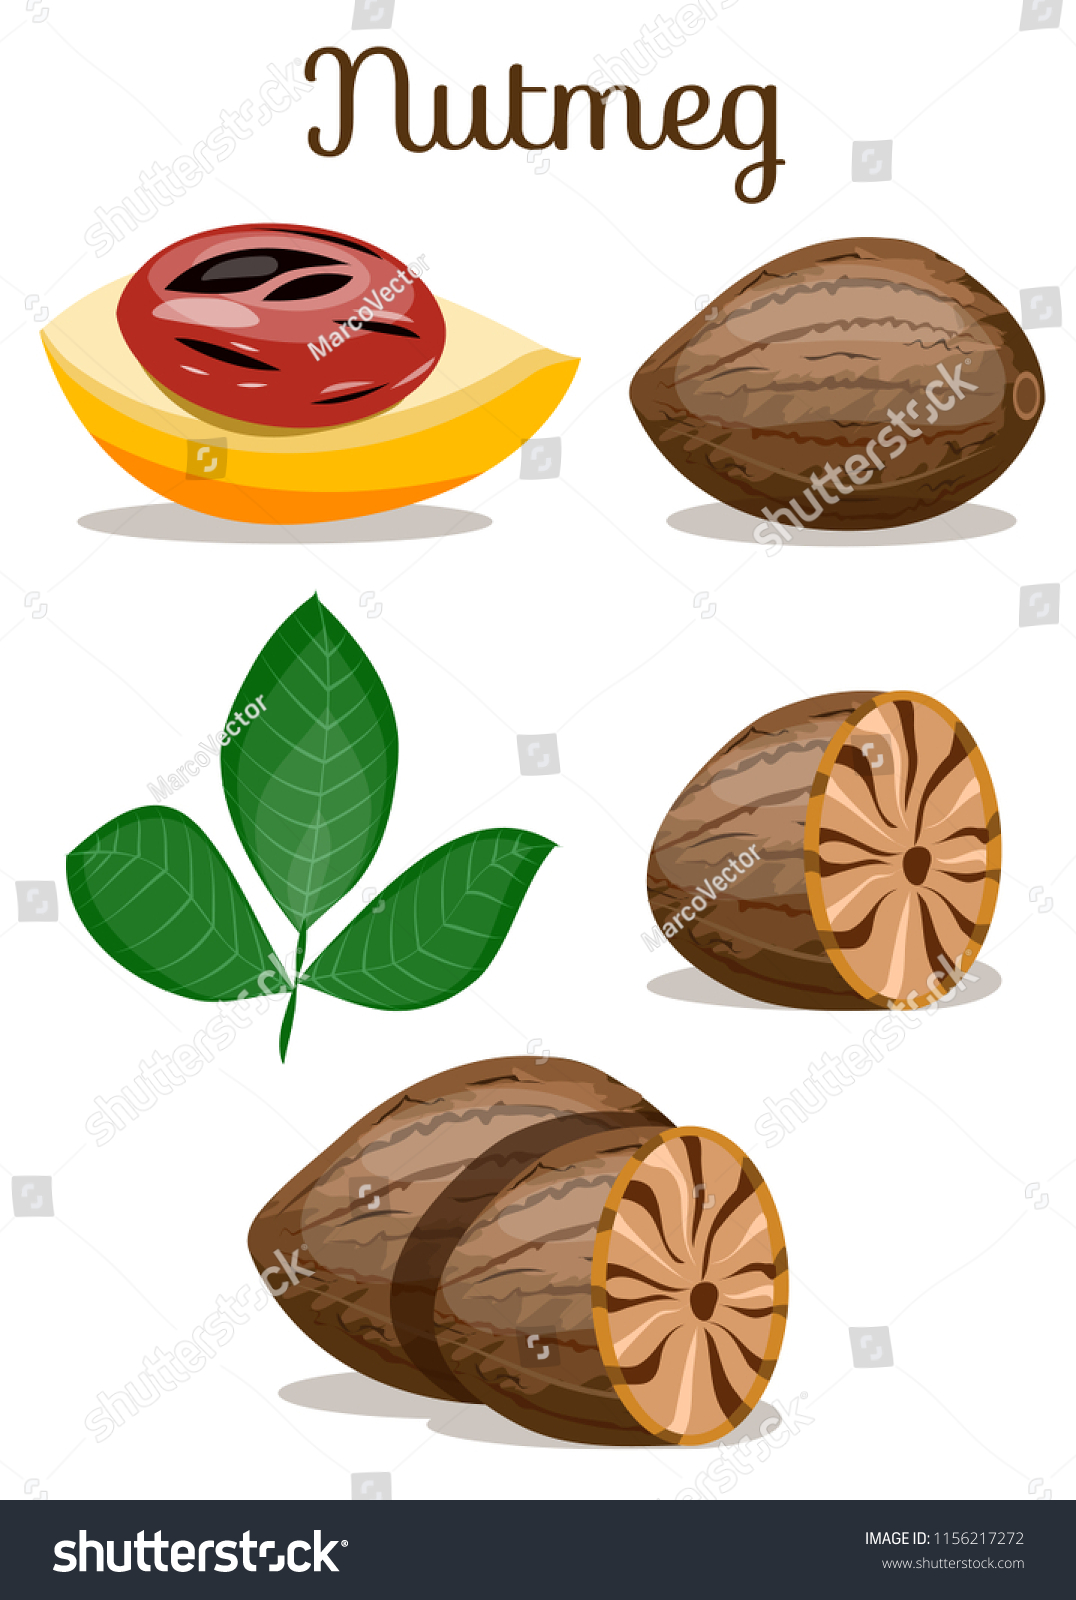 Nutmeg Wholepeeledfruitleaves Can Be Used Packageprintswrappingmenulabel Stock Vector Royalty Free 1156217272,Fire Belly Newt Habitat